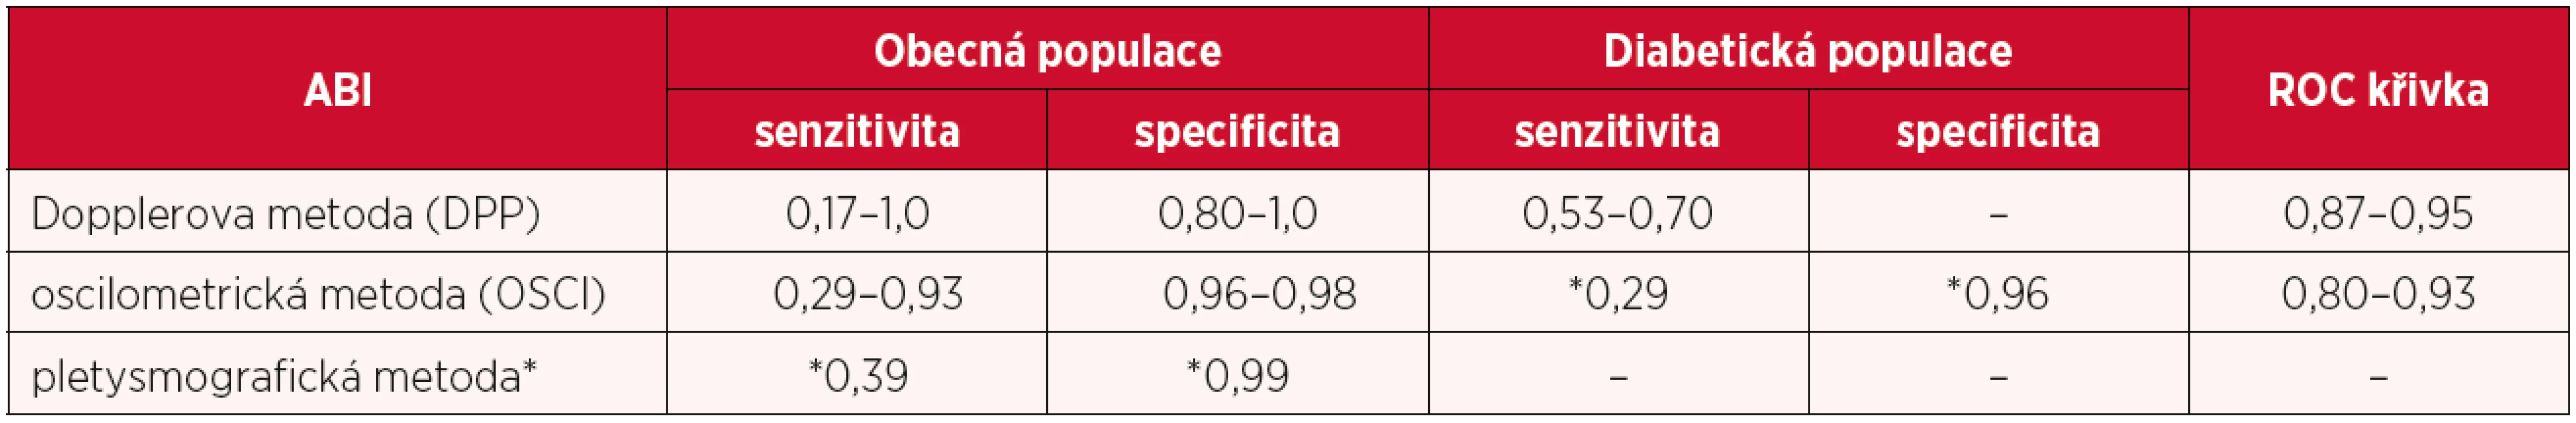 Nejčastěji používané neinvazivní metody ke zjištění ankle brachial indexu (ABI) ve srovnání s angiografickým vyšetřením (rozmezí zjištěných hodnot z různých studií) (1)